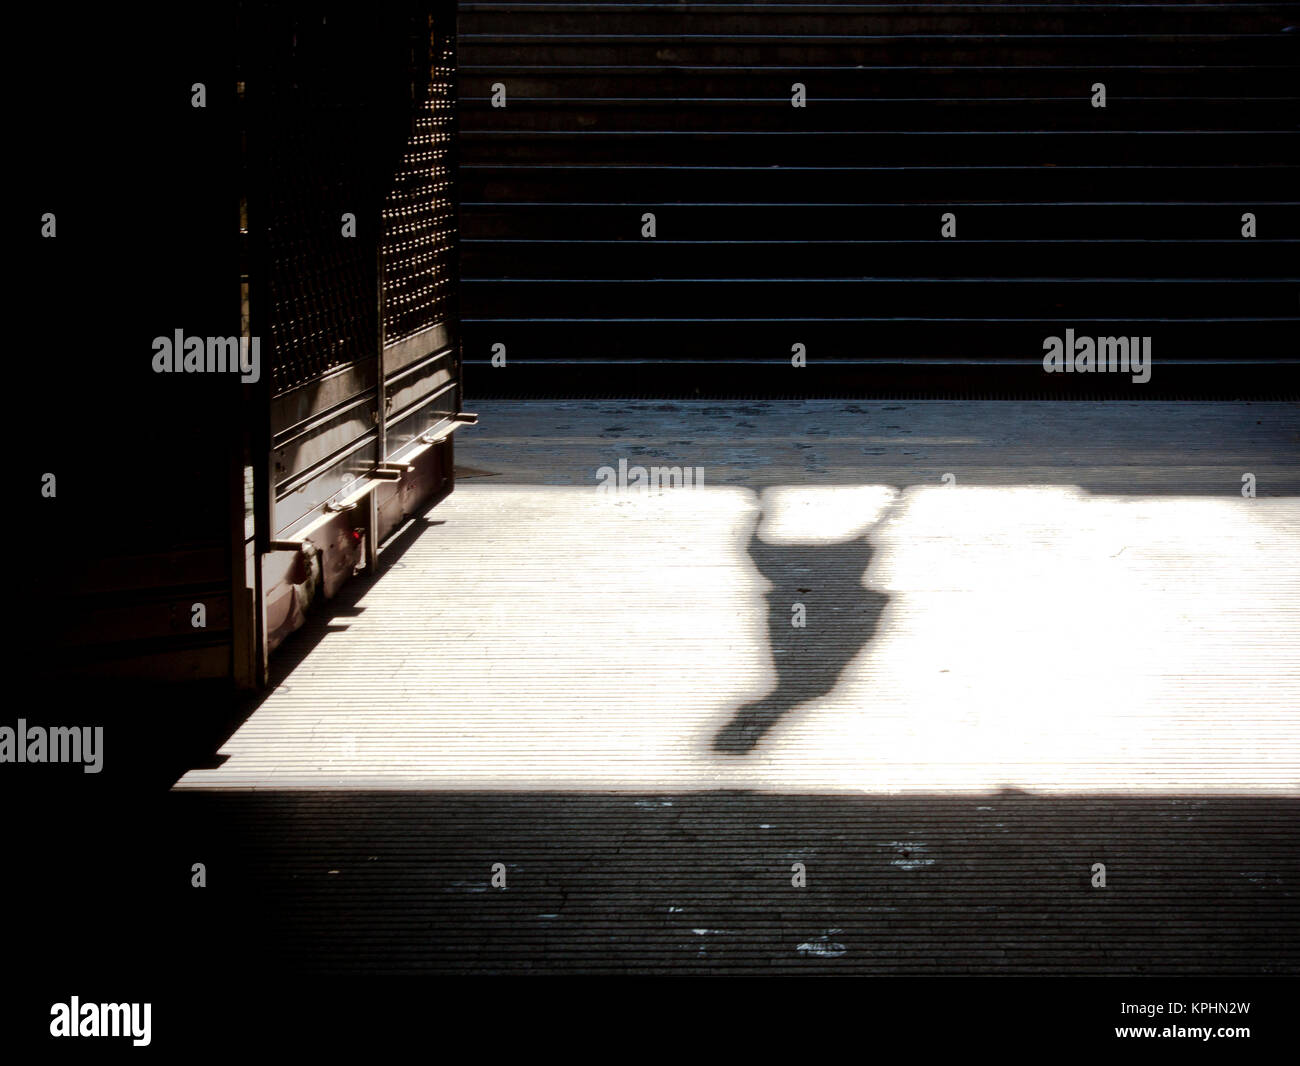 Ville solitude : ombre d'une personne de marcher seul et de métro fermé boutique le dimanche matin en sépia Noir et blanc Banque D'Images